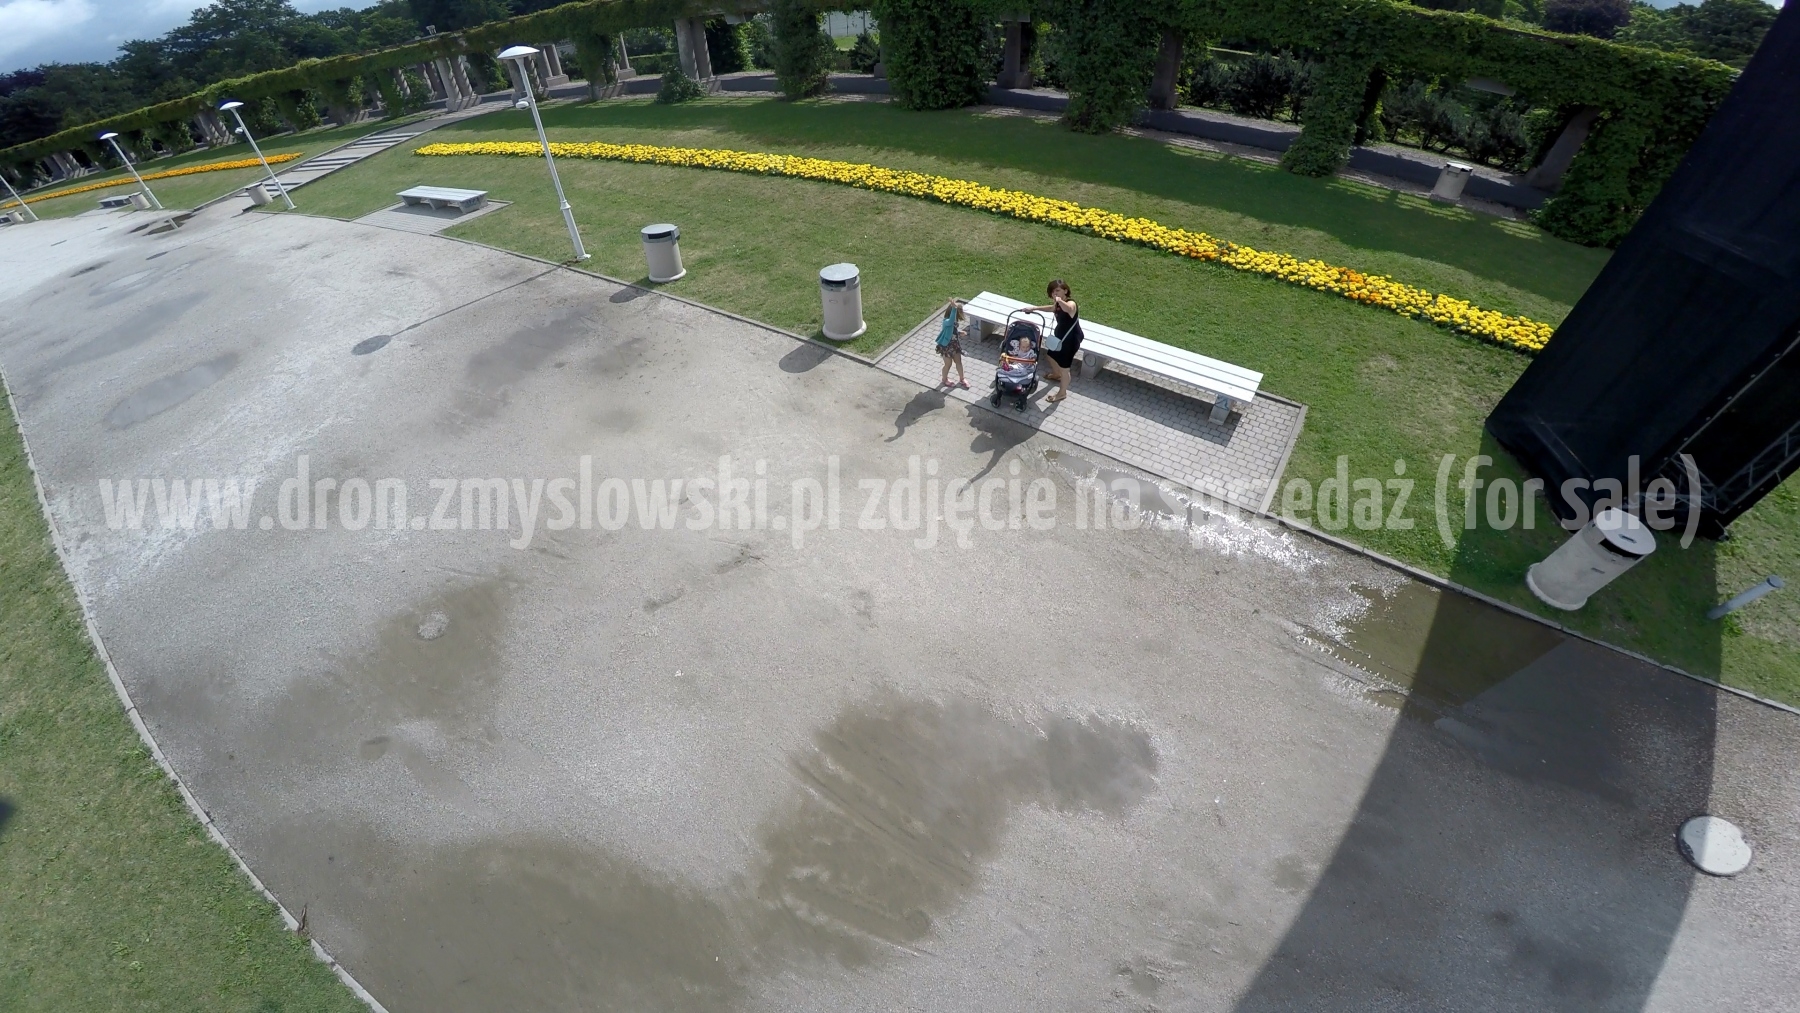 2015-07-15-Wroclaw-dzien-5-dron-nad-Hala-Stulecia-012